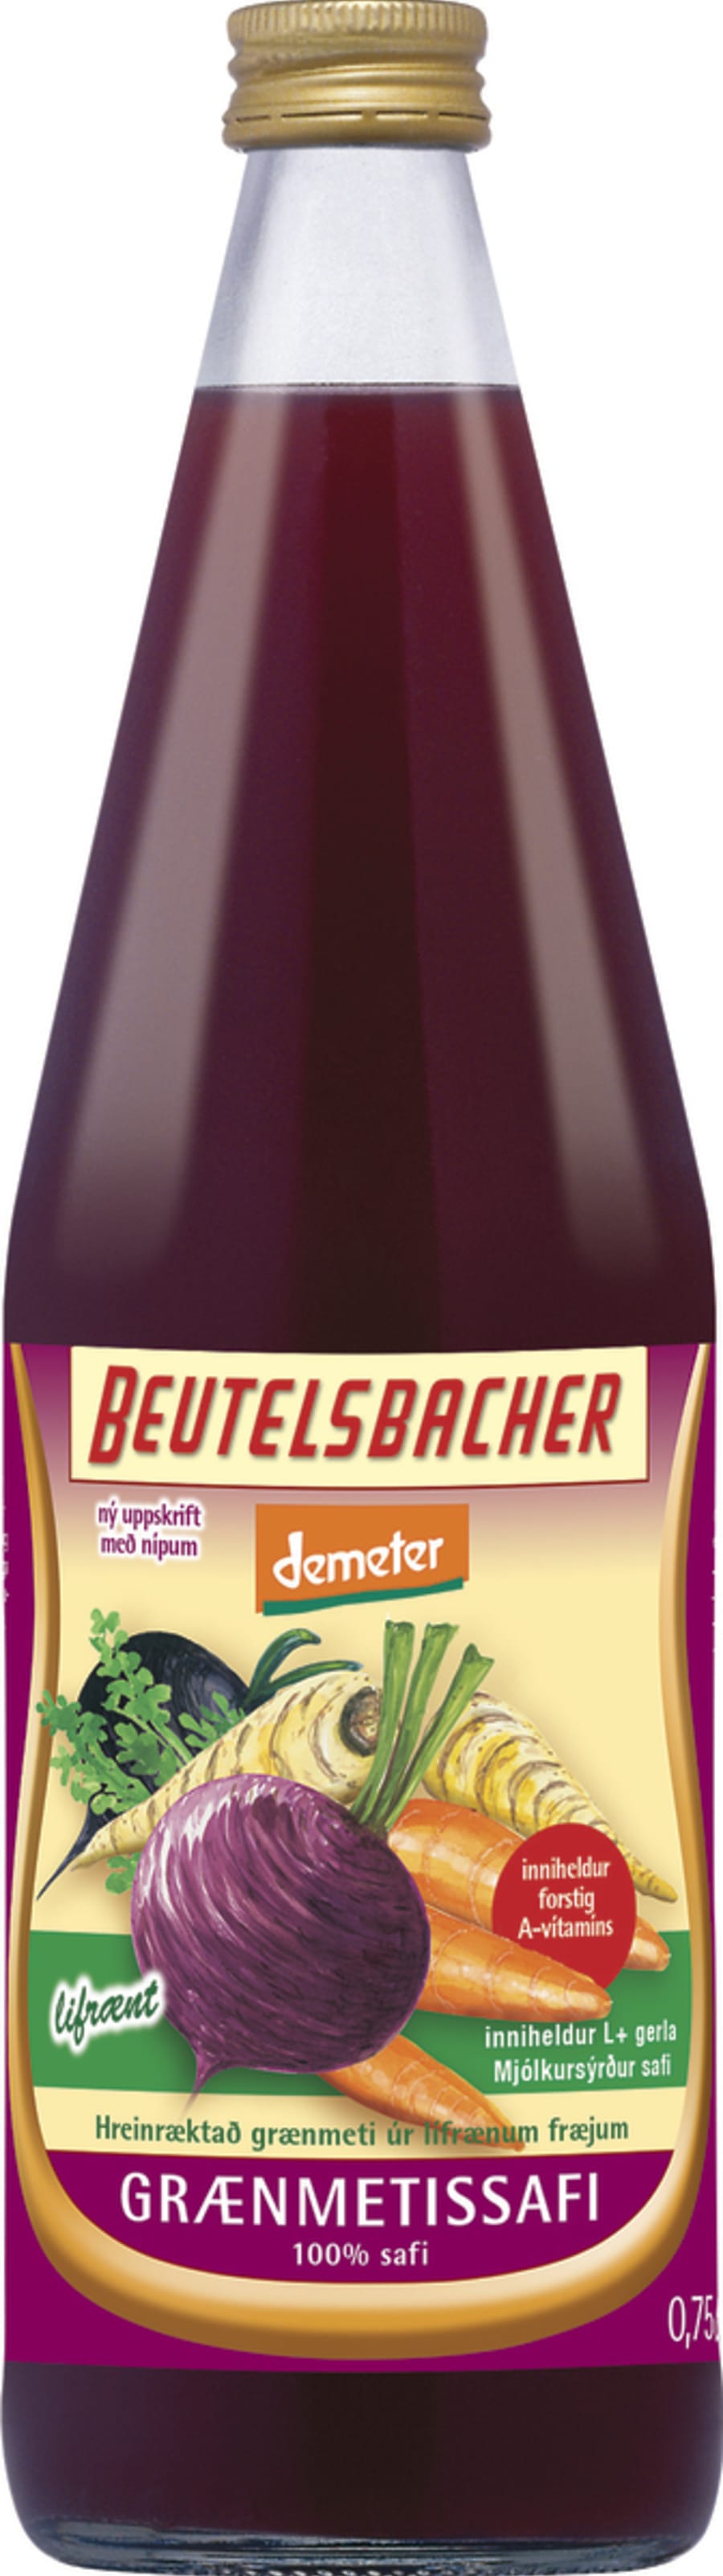 Beutelsbacher Grænmetissafi